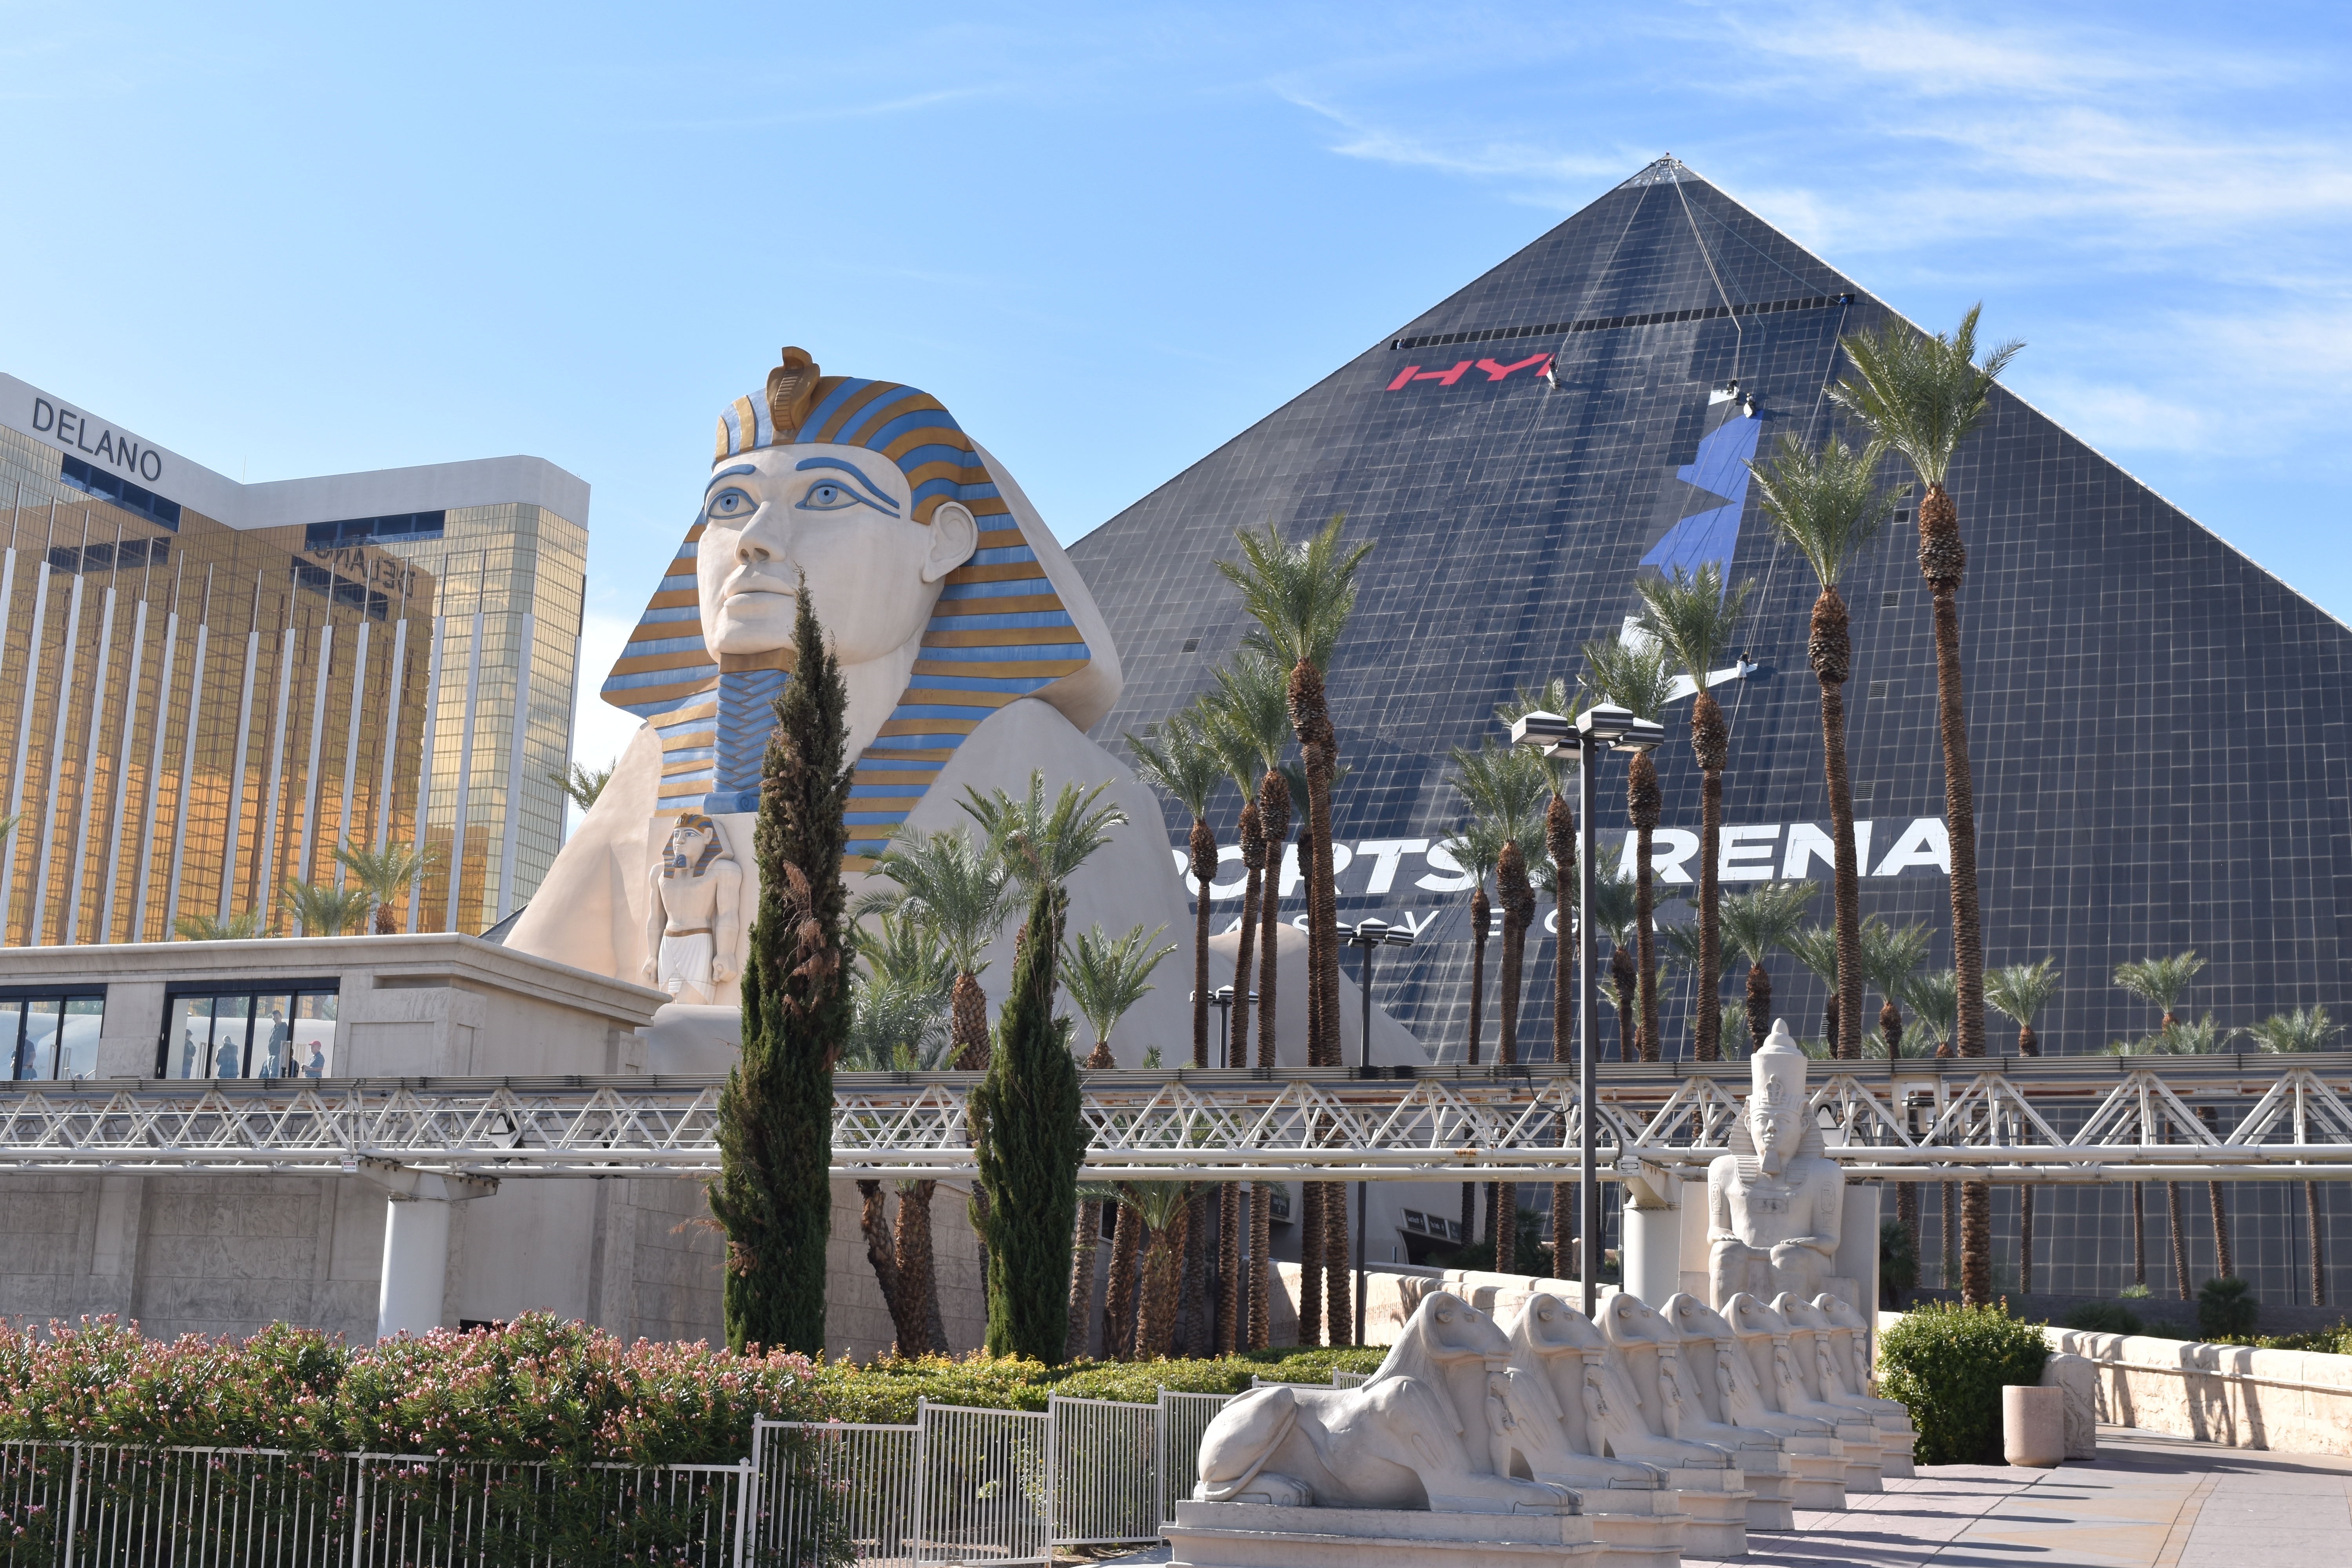 Pyramidenhotel Las Vegas